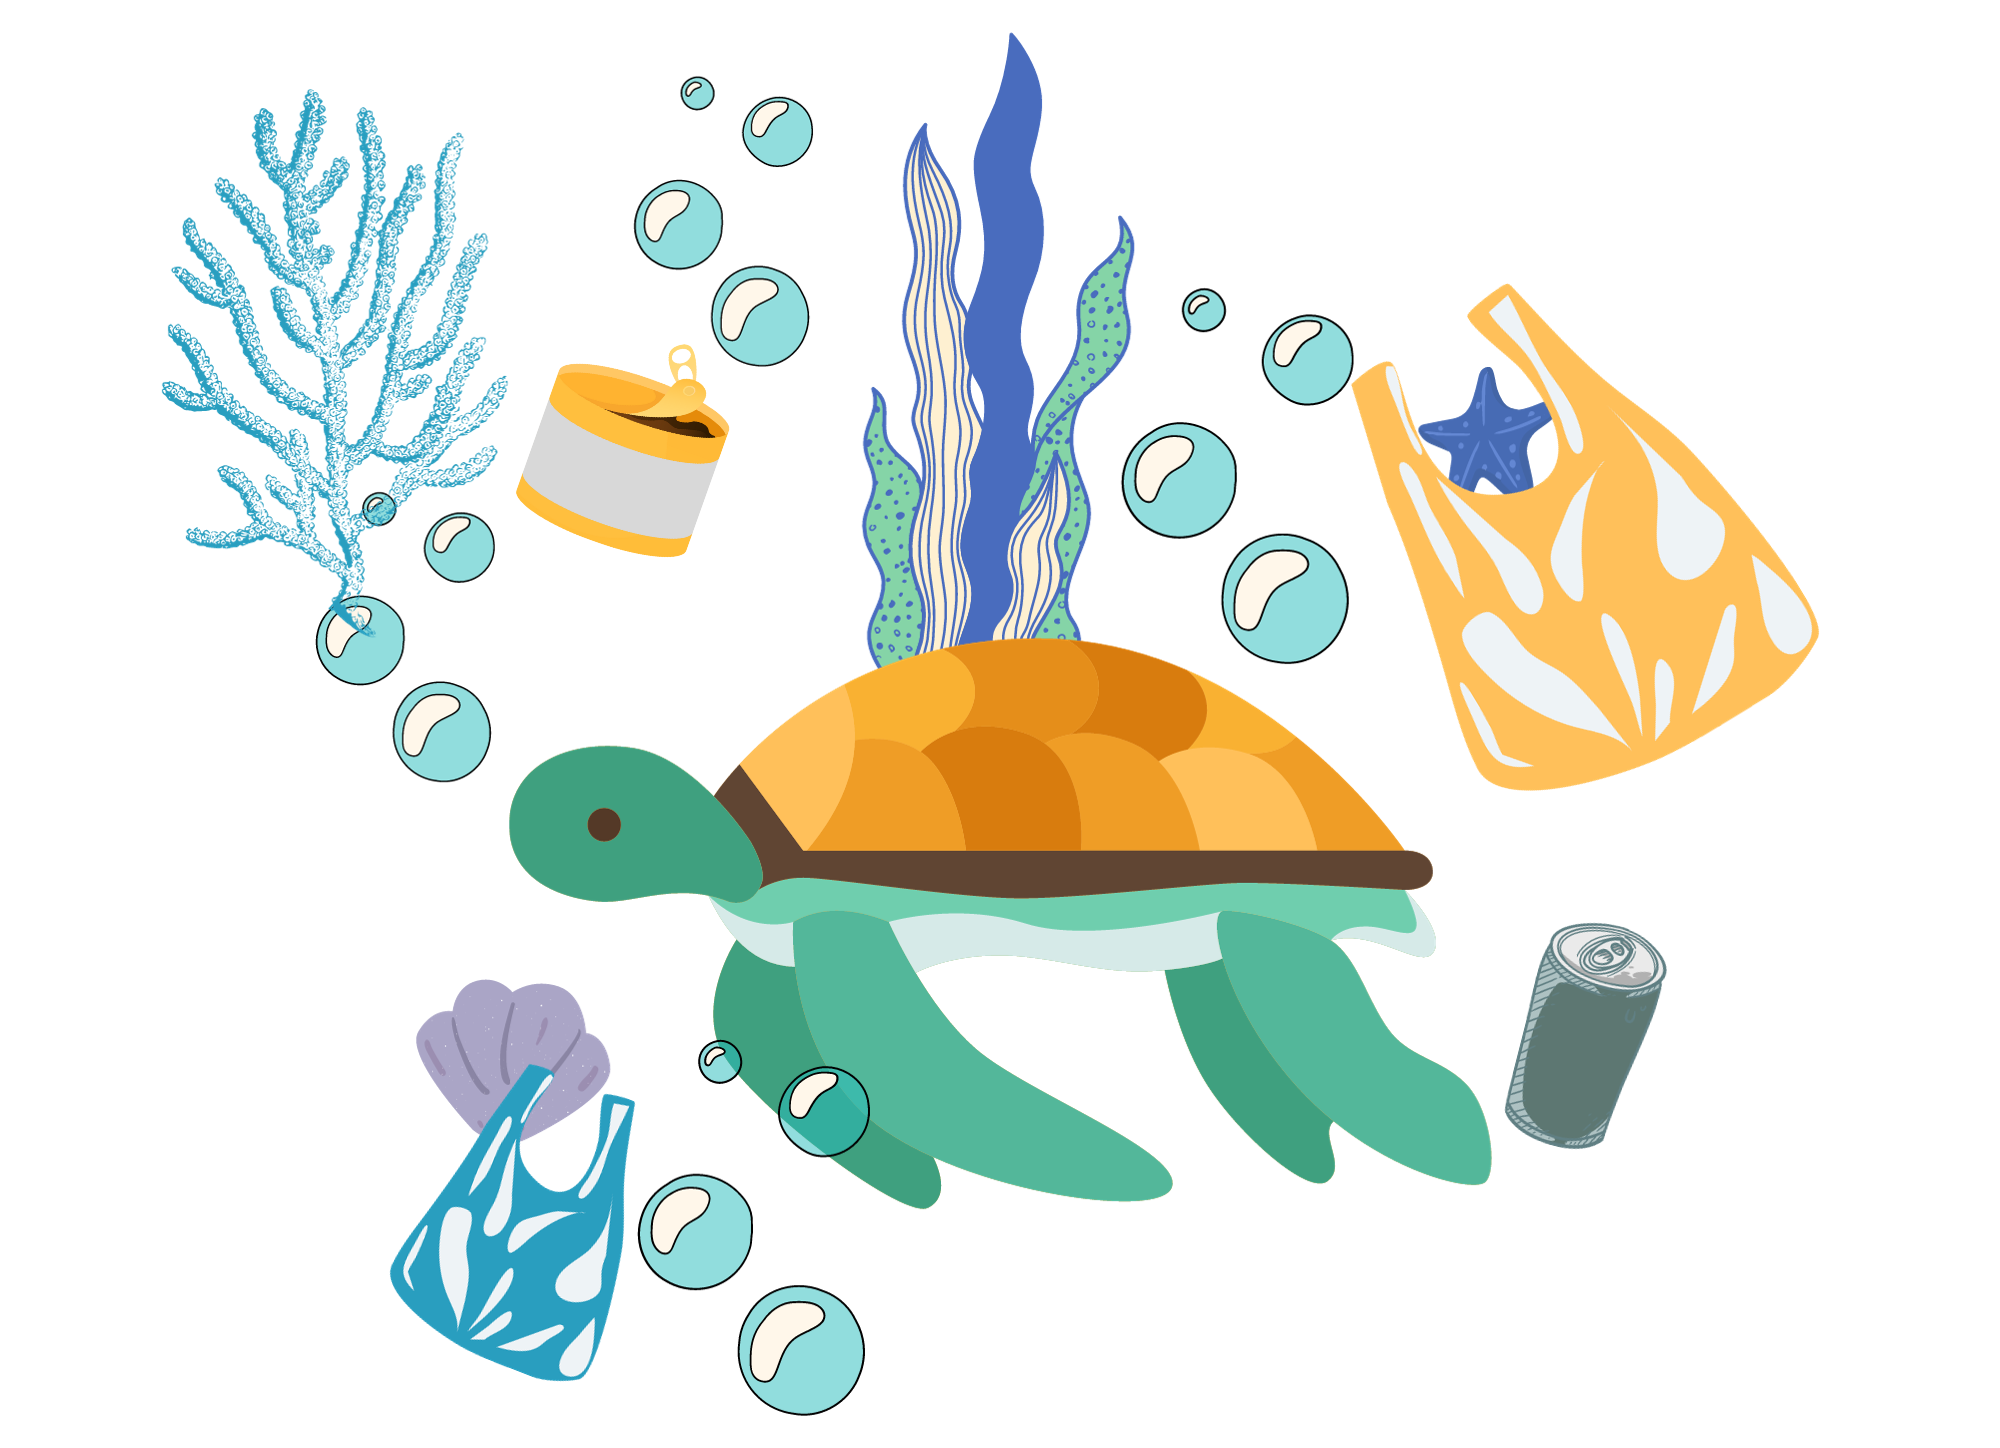 Pictogramme d'une tortue en pleine mer avec des déchets autour d'elle